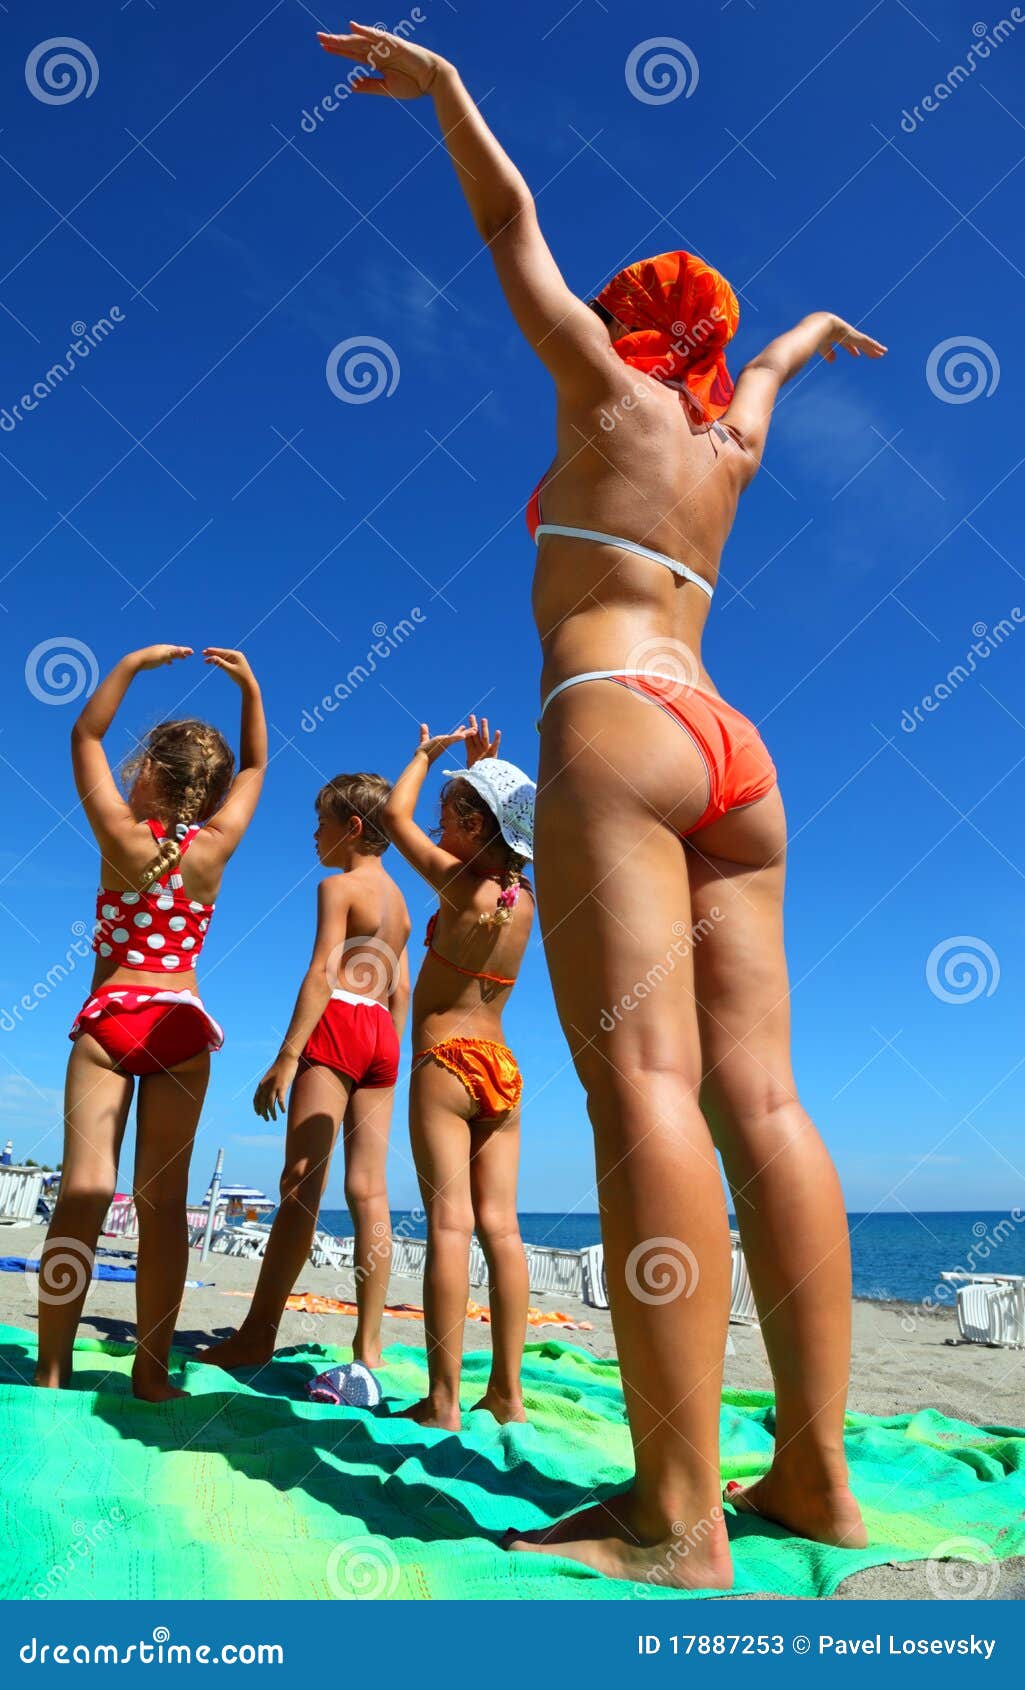 дети на голом пляже фото 110